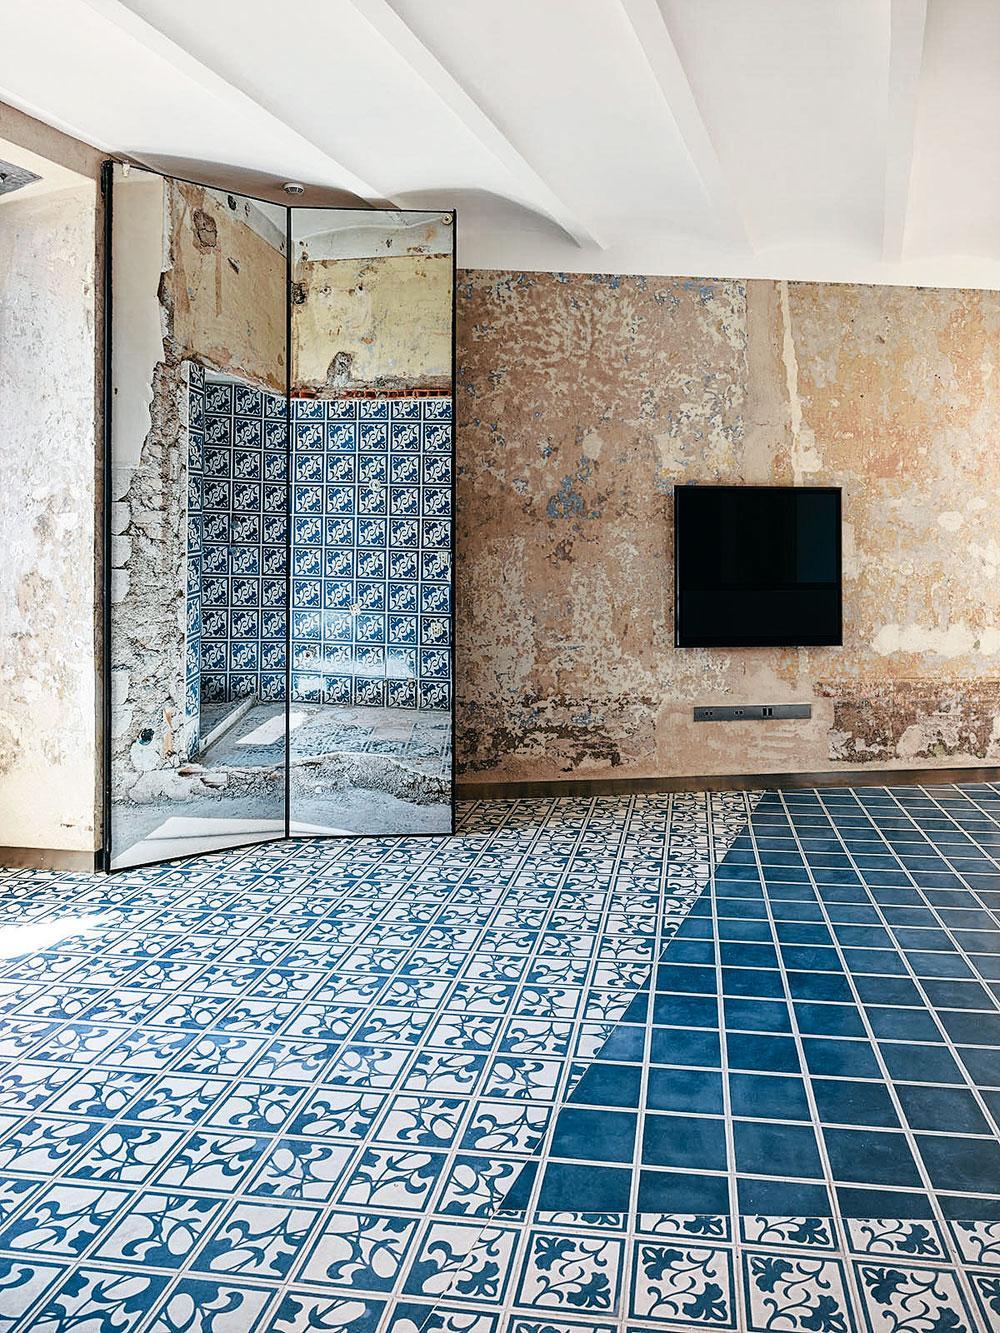 L'hôtel, boutique, résidence d'artistes imaginé par Jean Nouvel pour Fendi à Rome